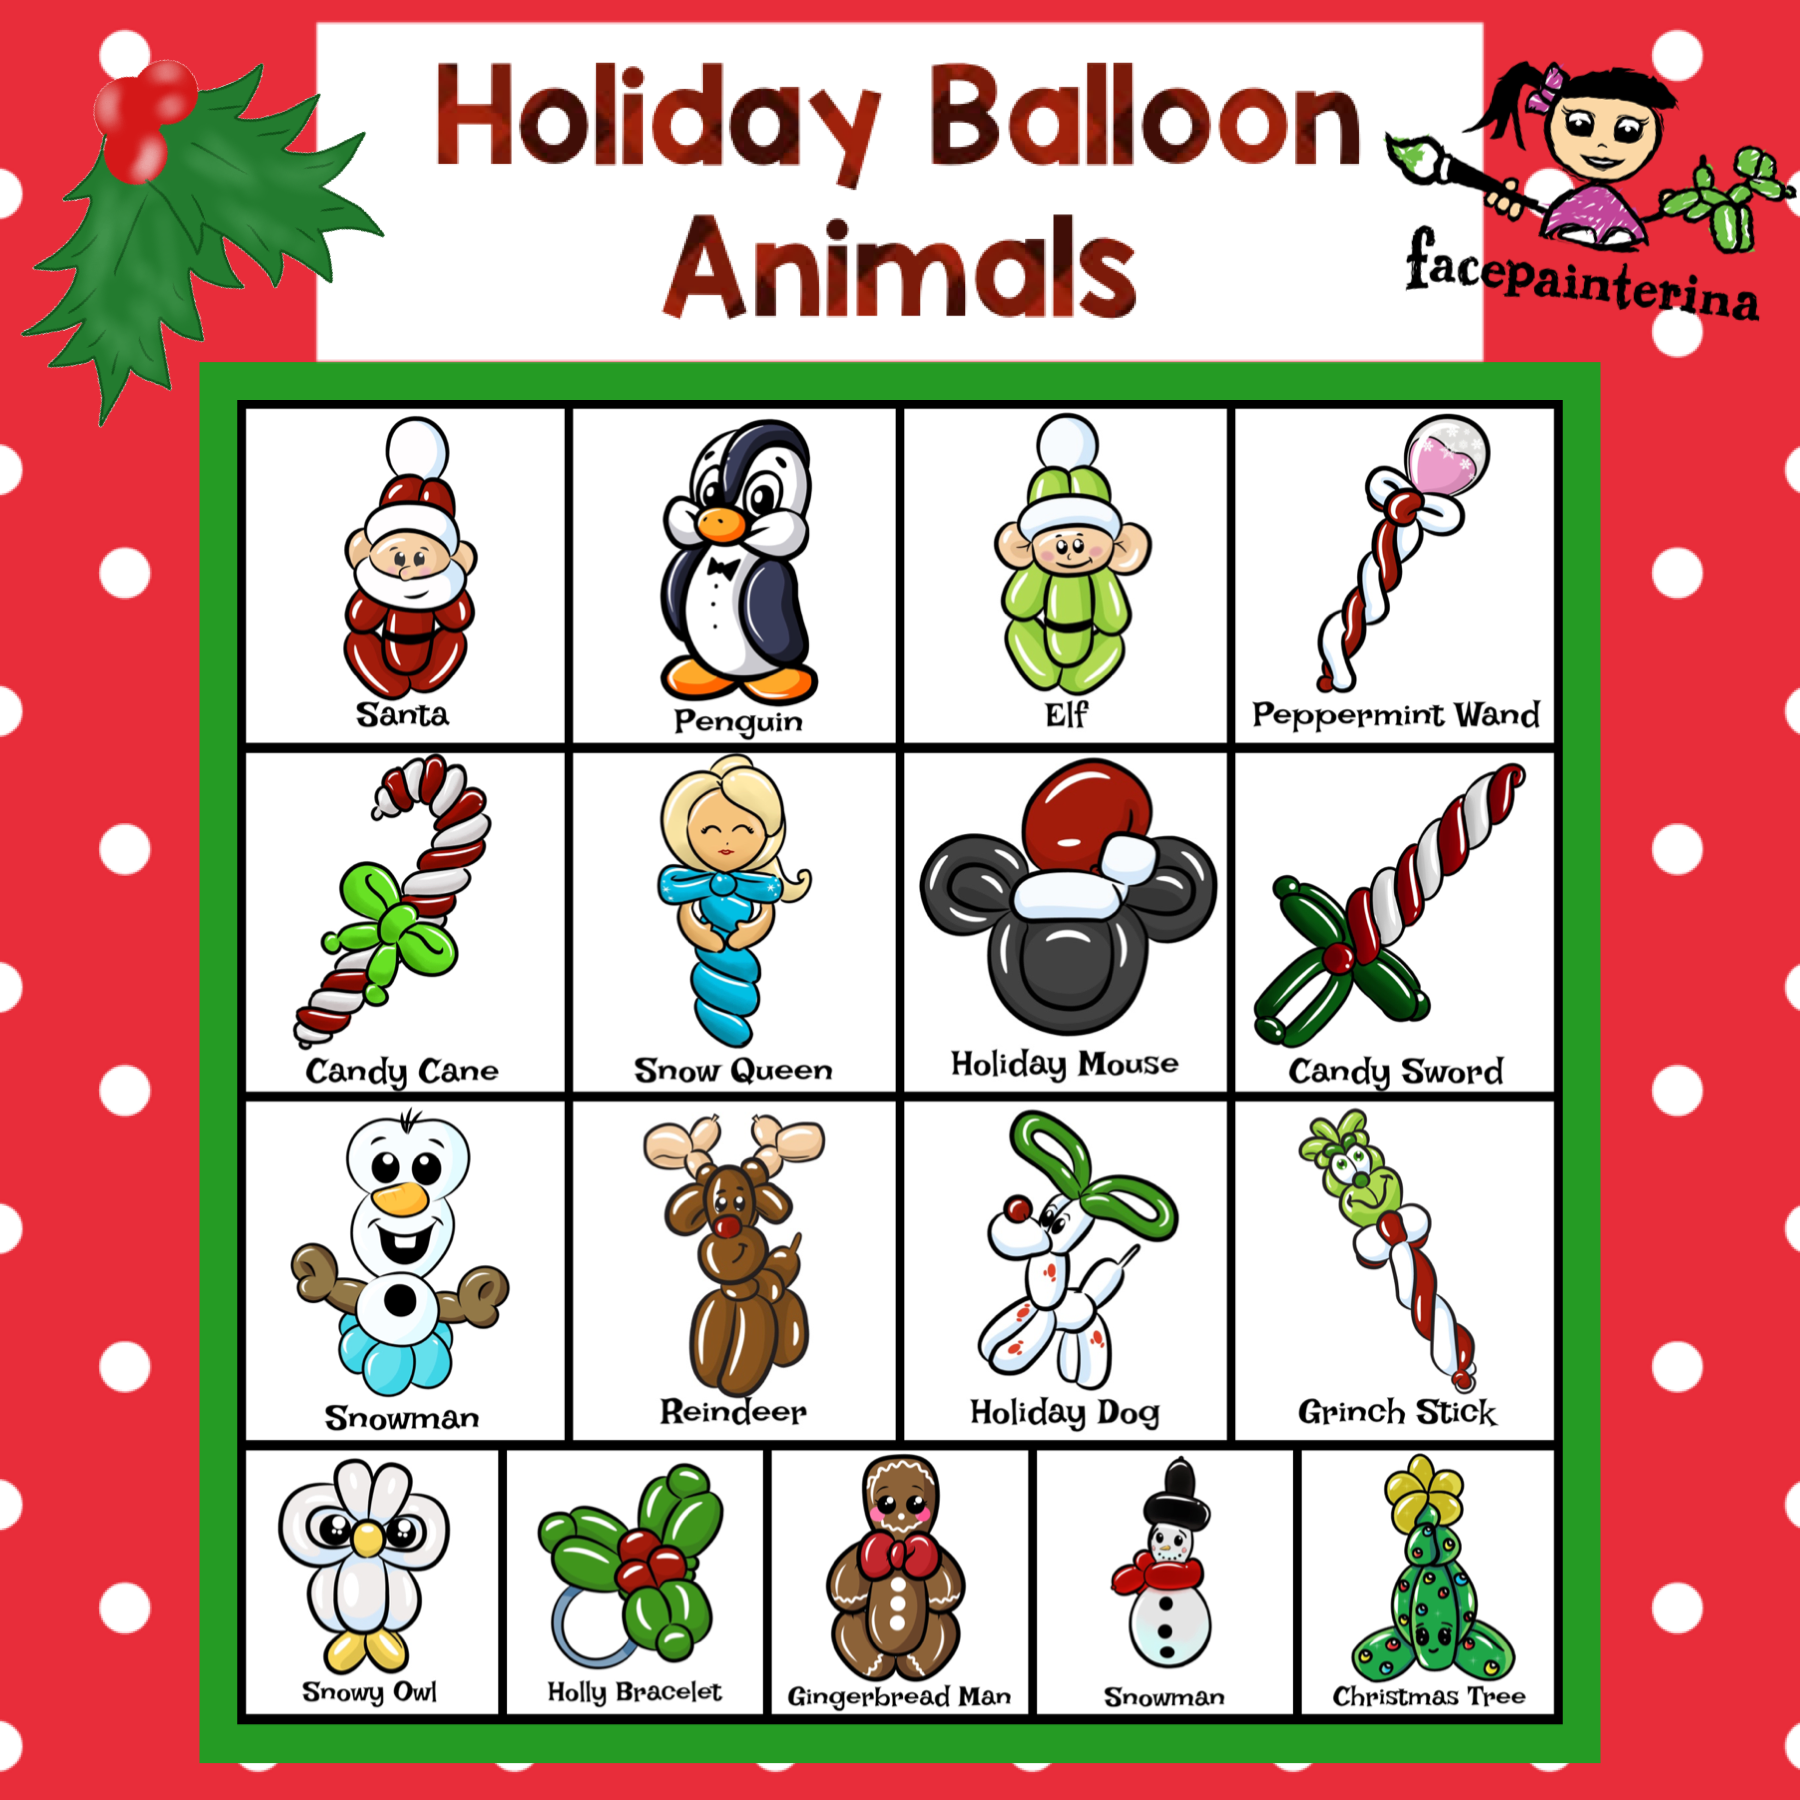 Menu of Holiday Balloon Animals